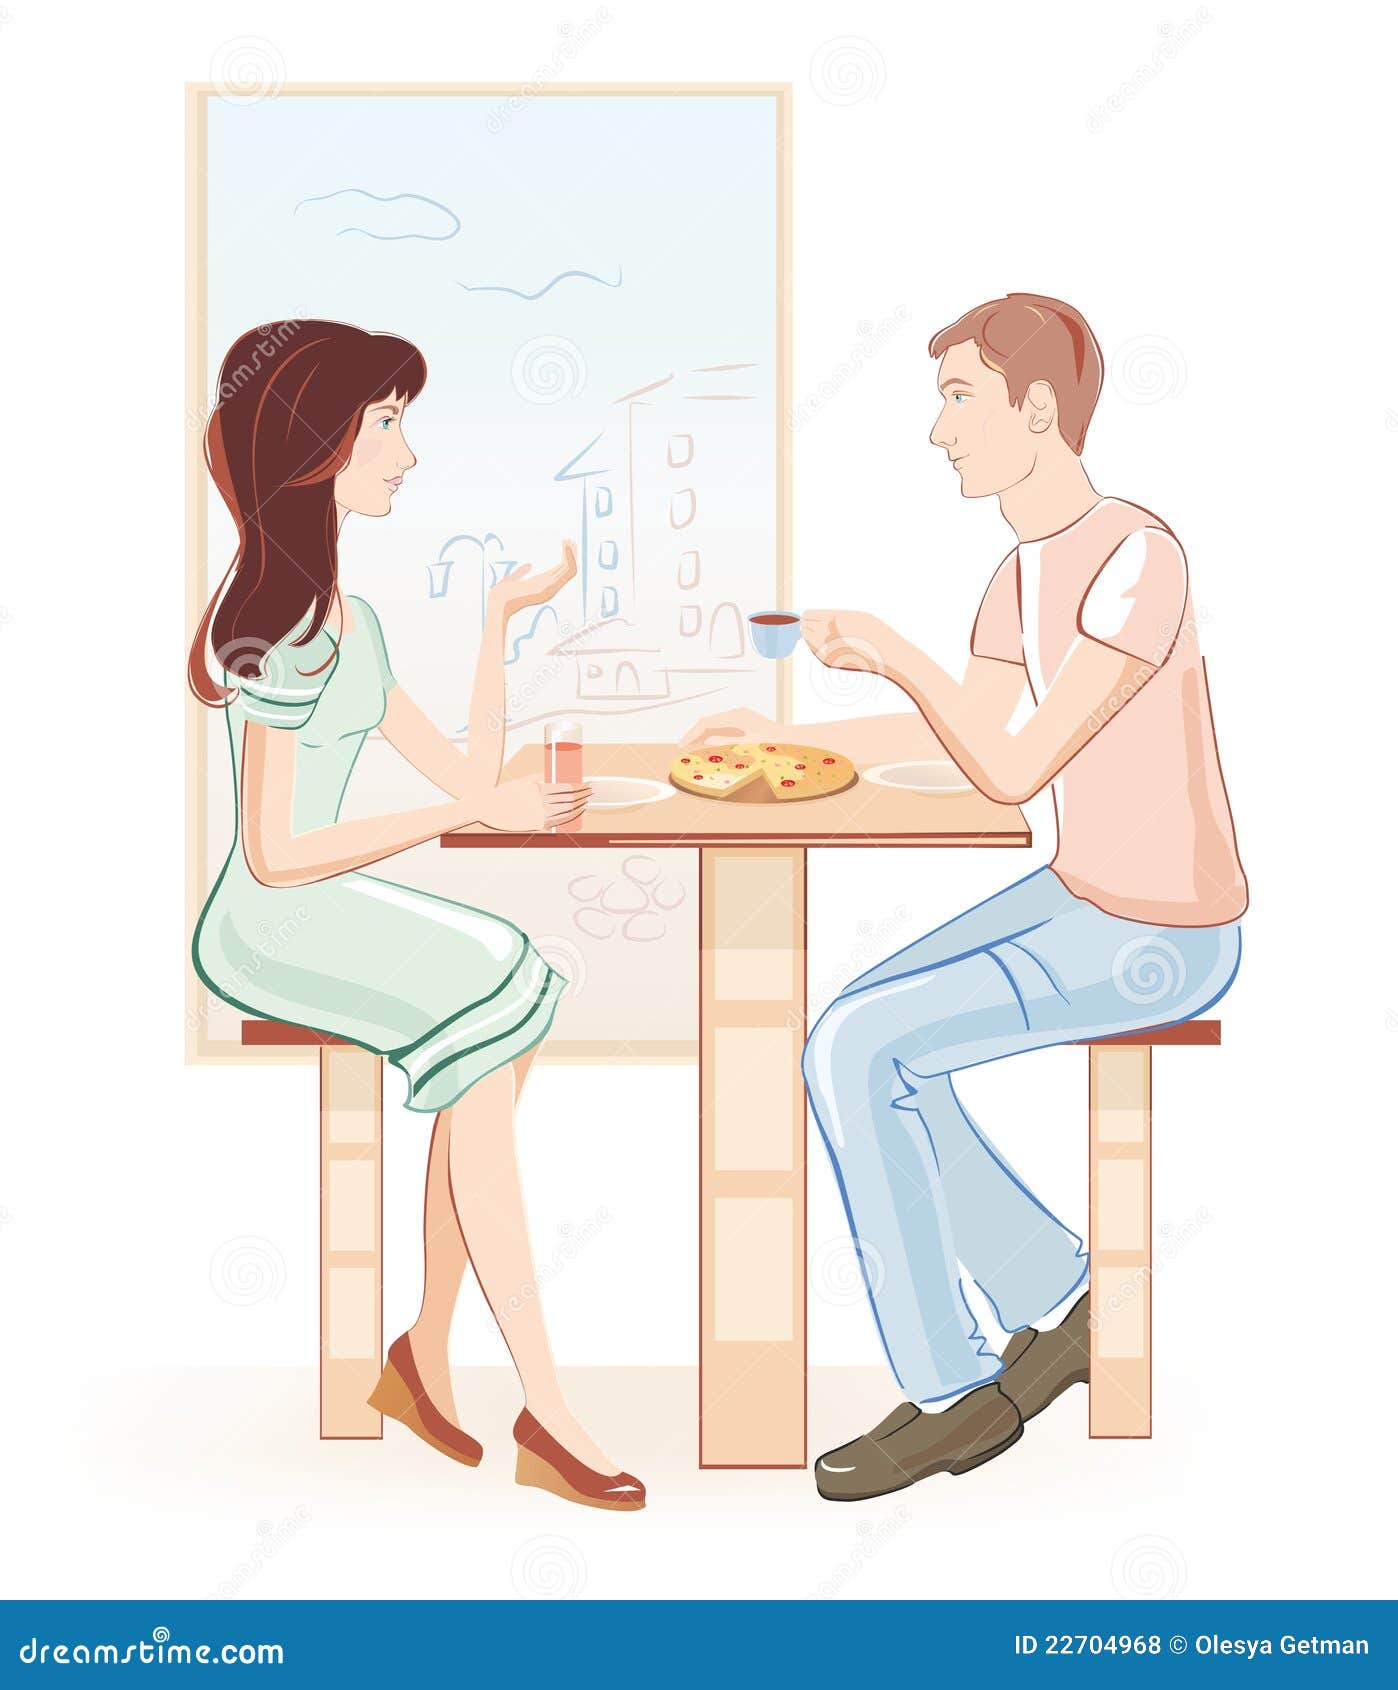 Dating Cafe Online